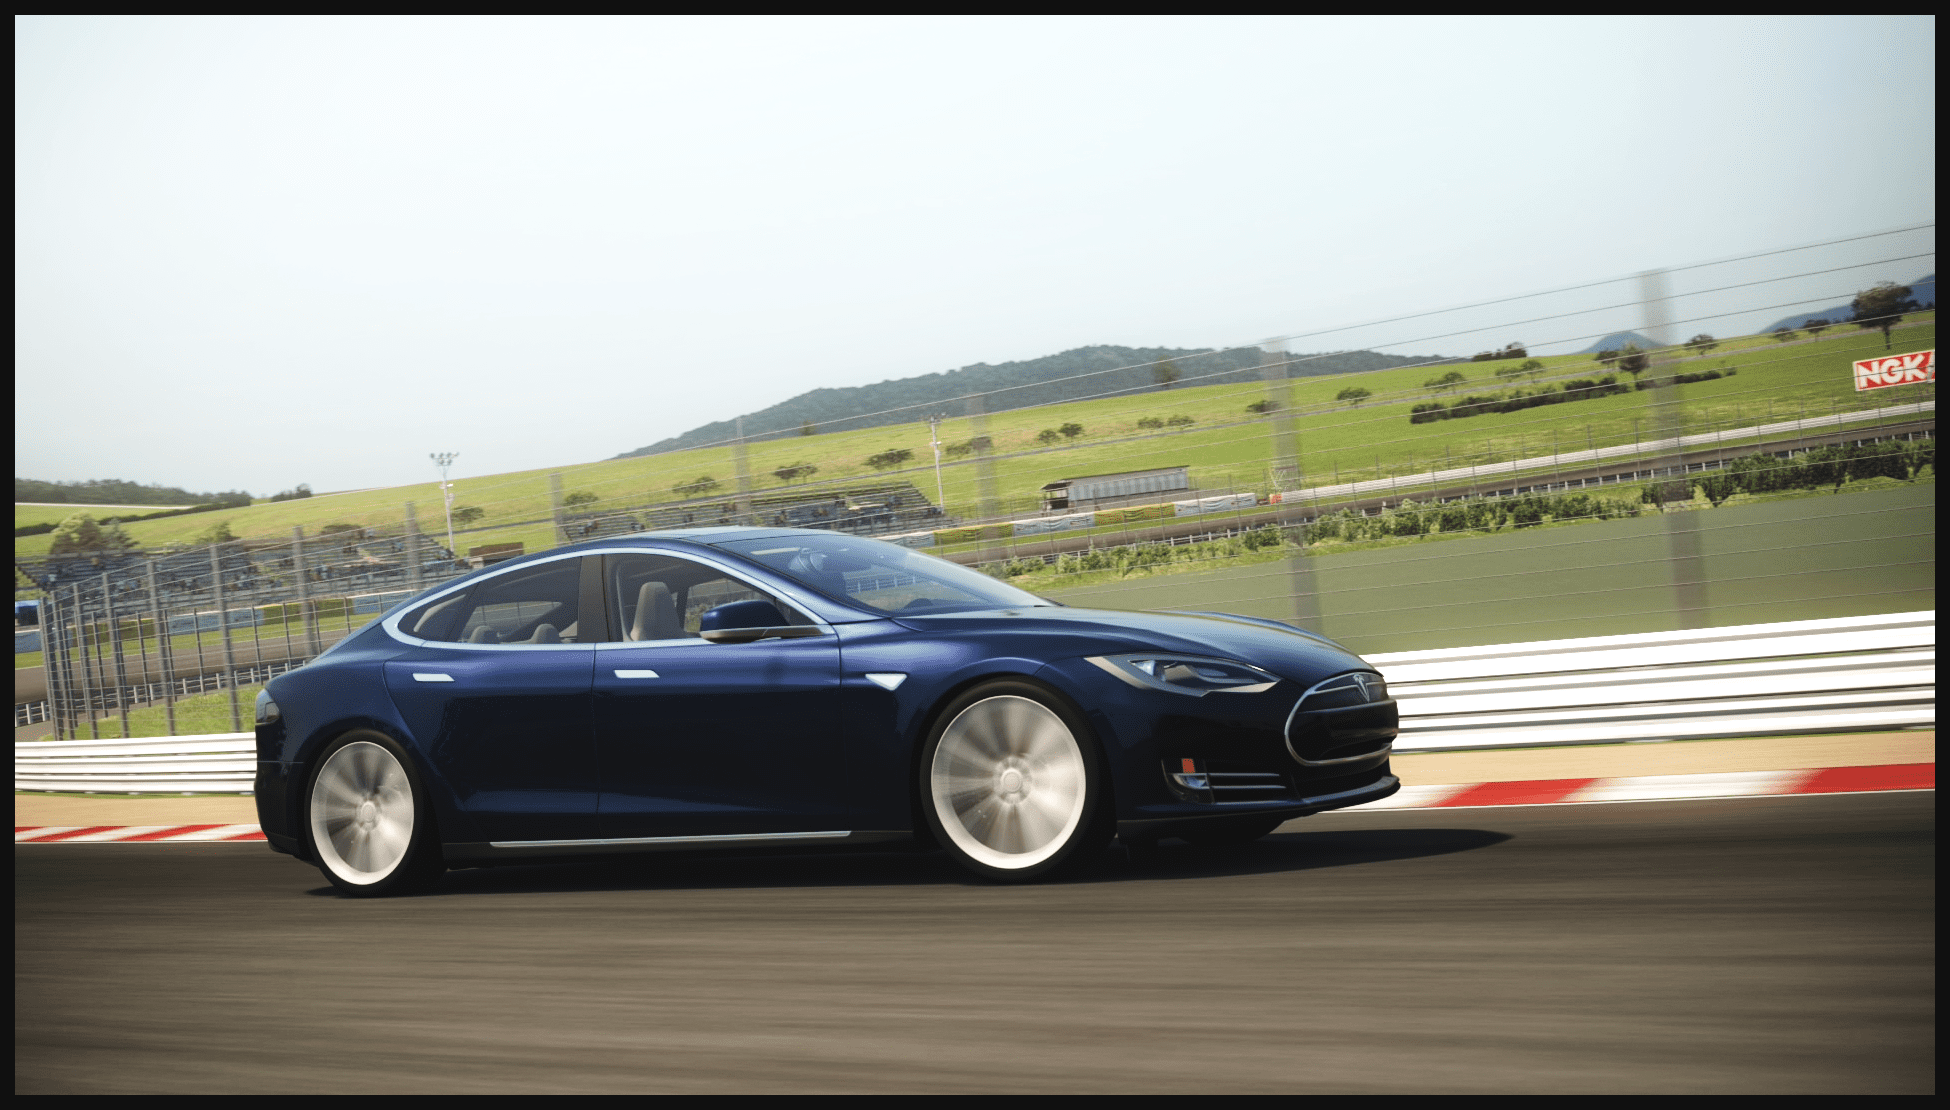 Tesla Model S - Apricot Hill Raceway 2